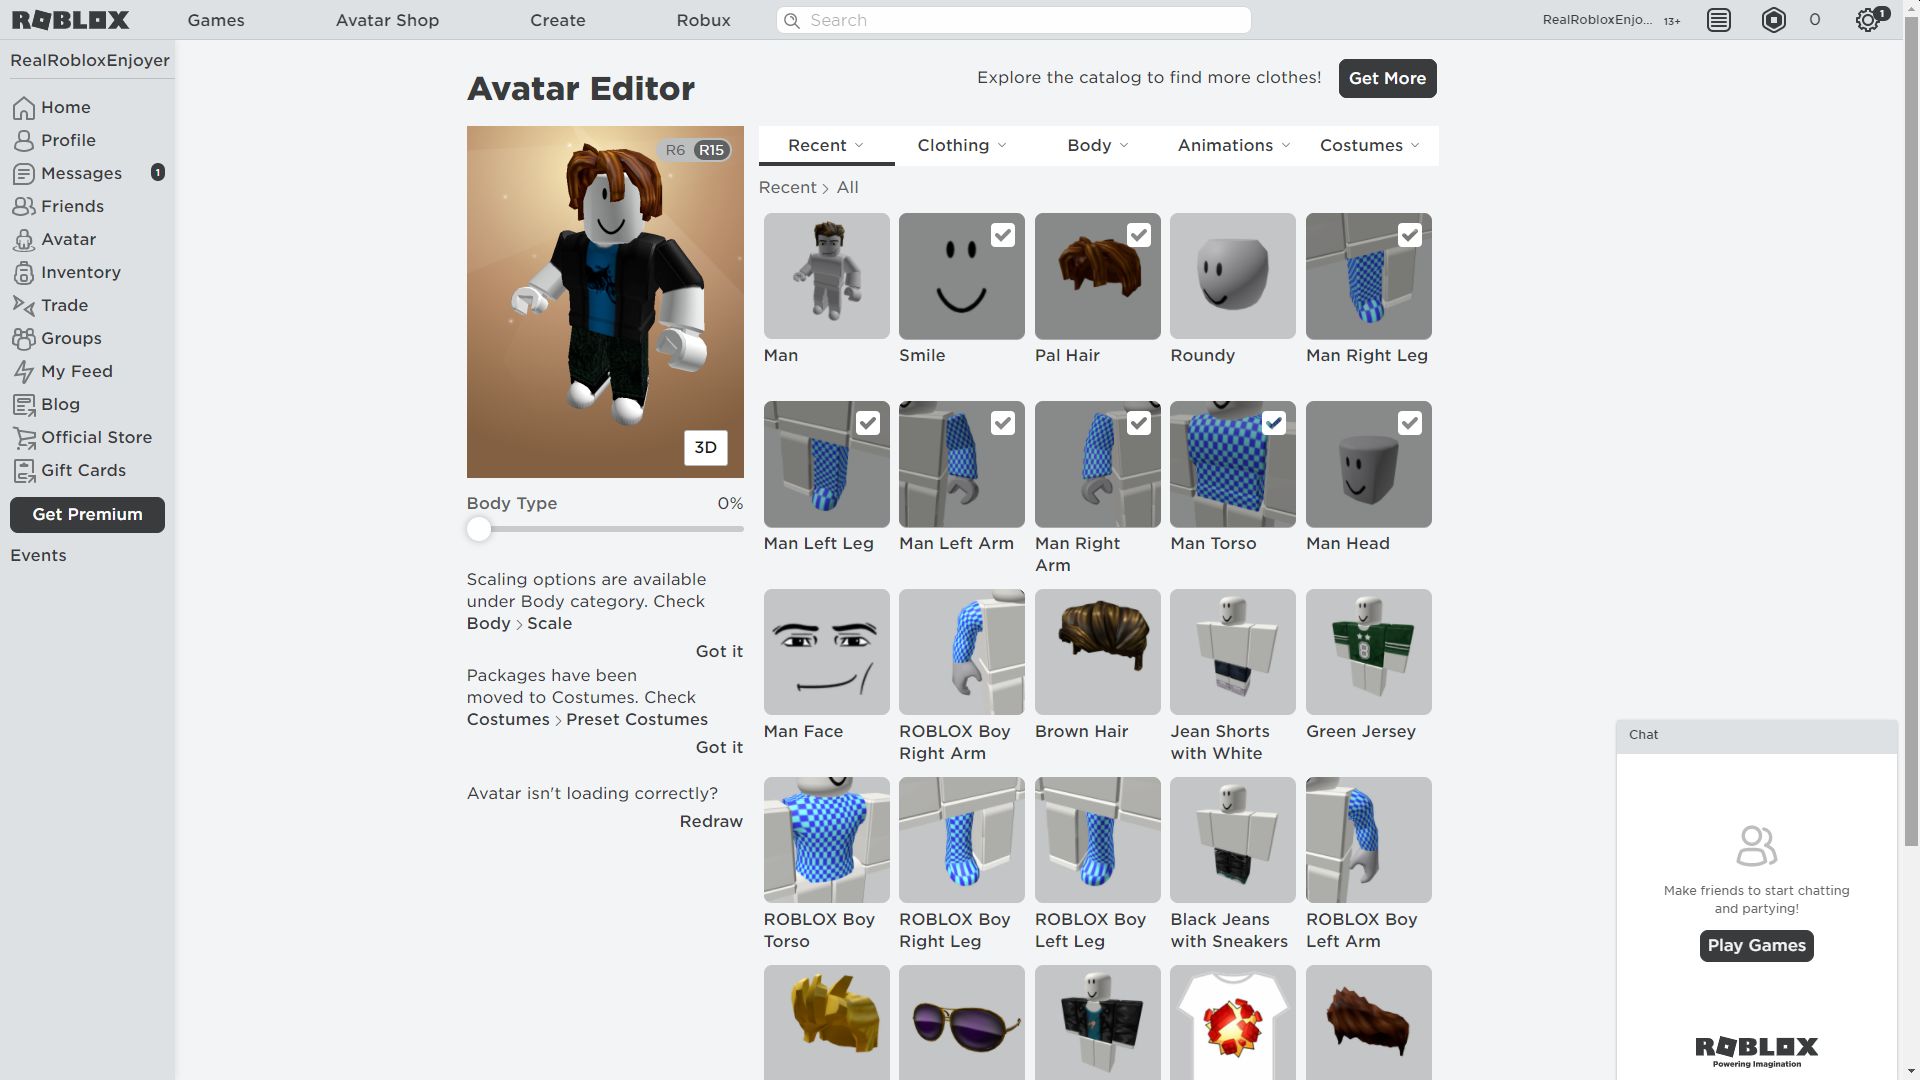 www.roblox/avatar shop